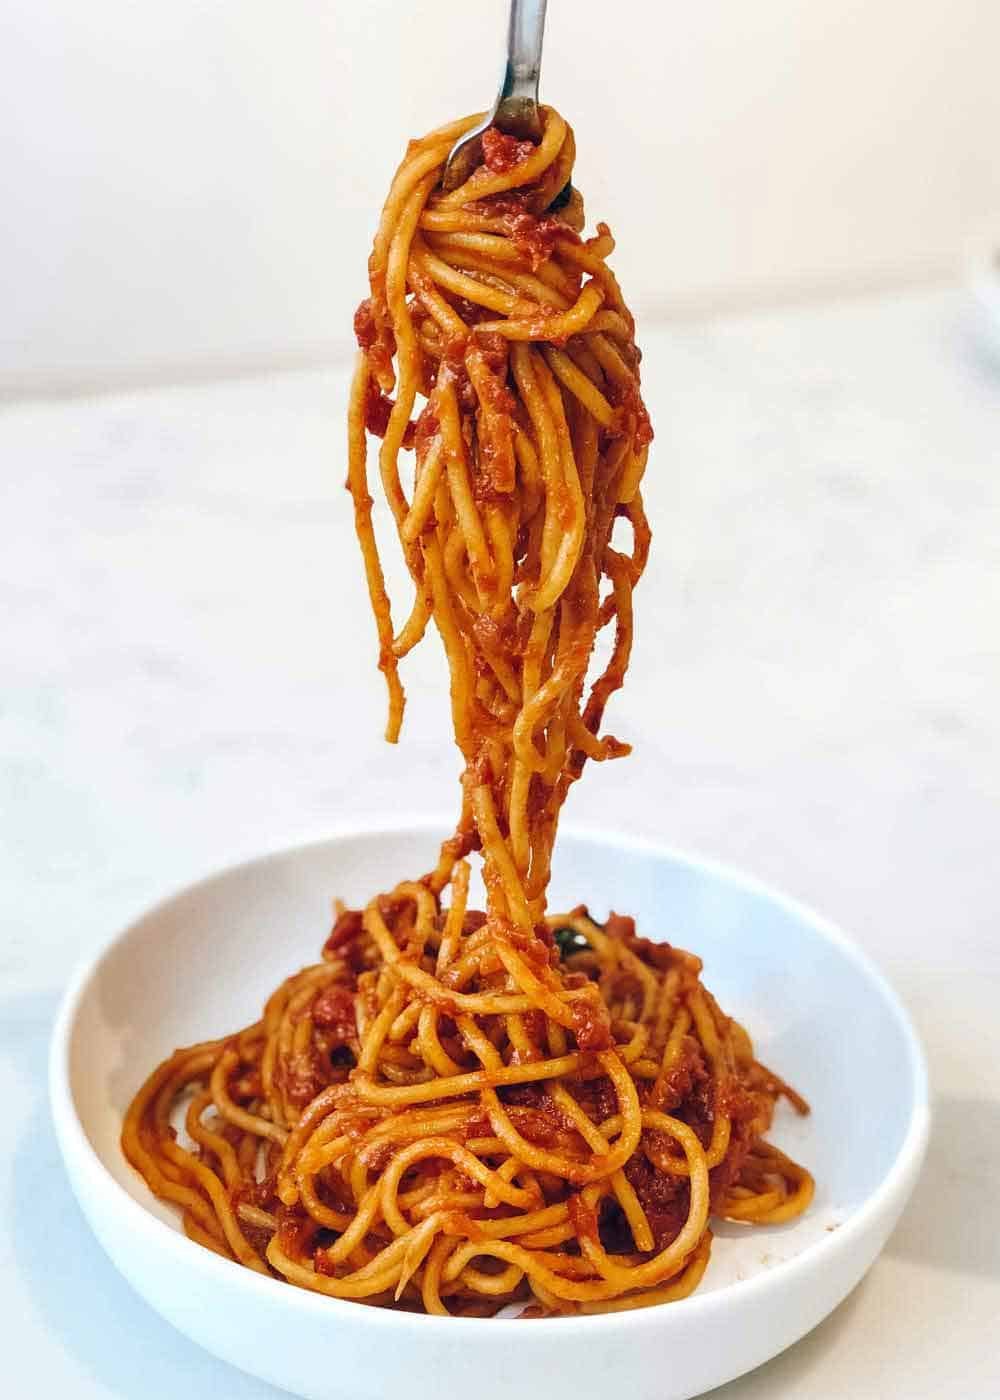 Resepi Spaghetti Goreng Basah